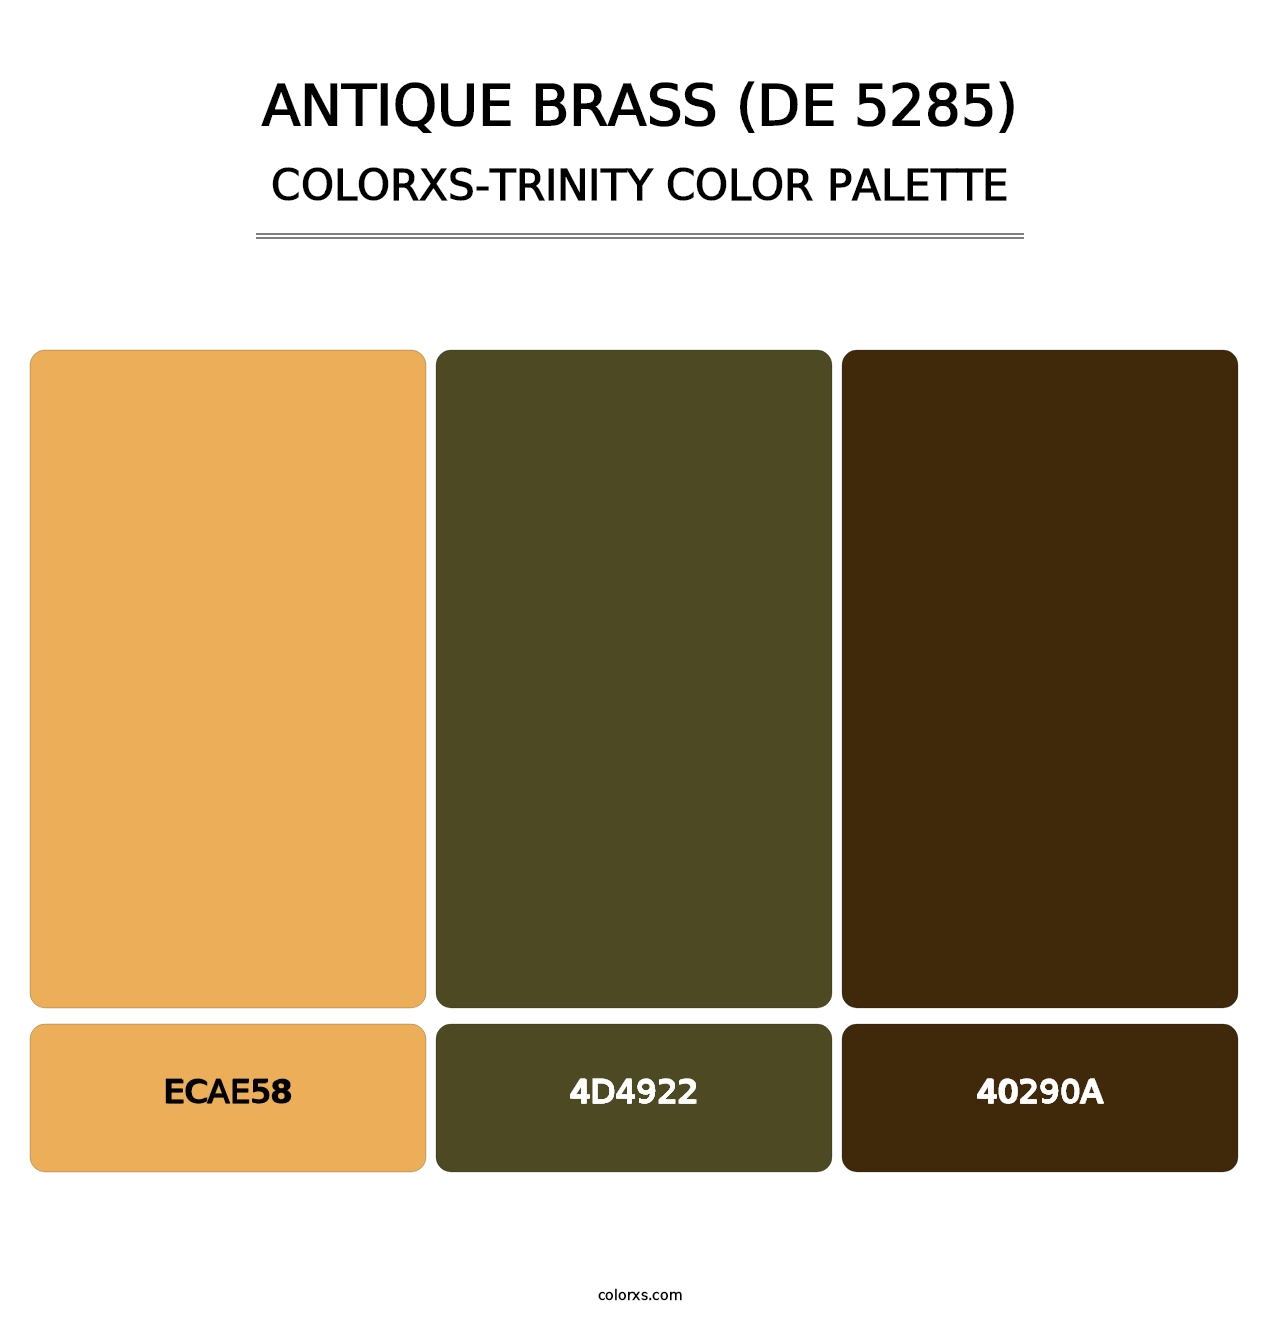 Antique Brass (DE 5285) - Colorxs Trinity Palette